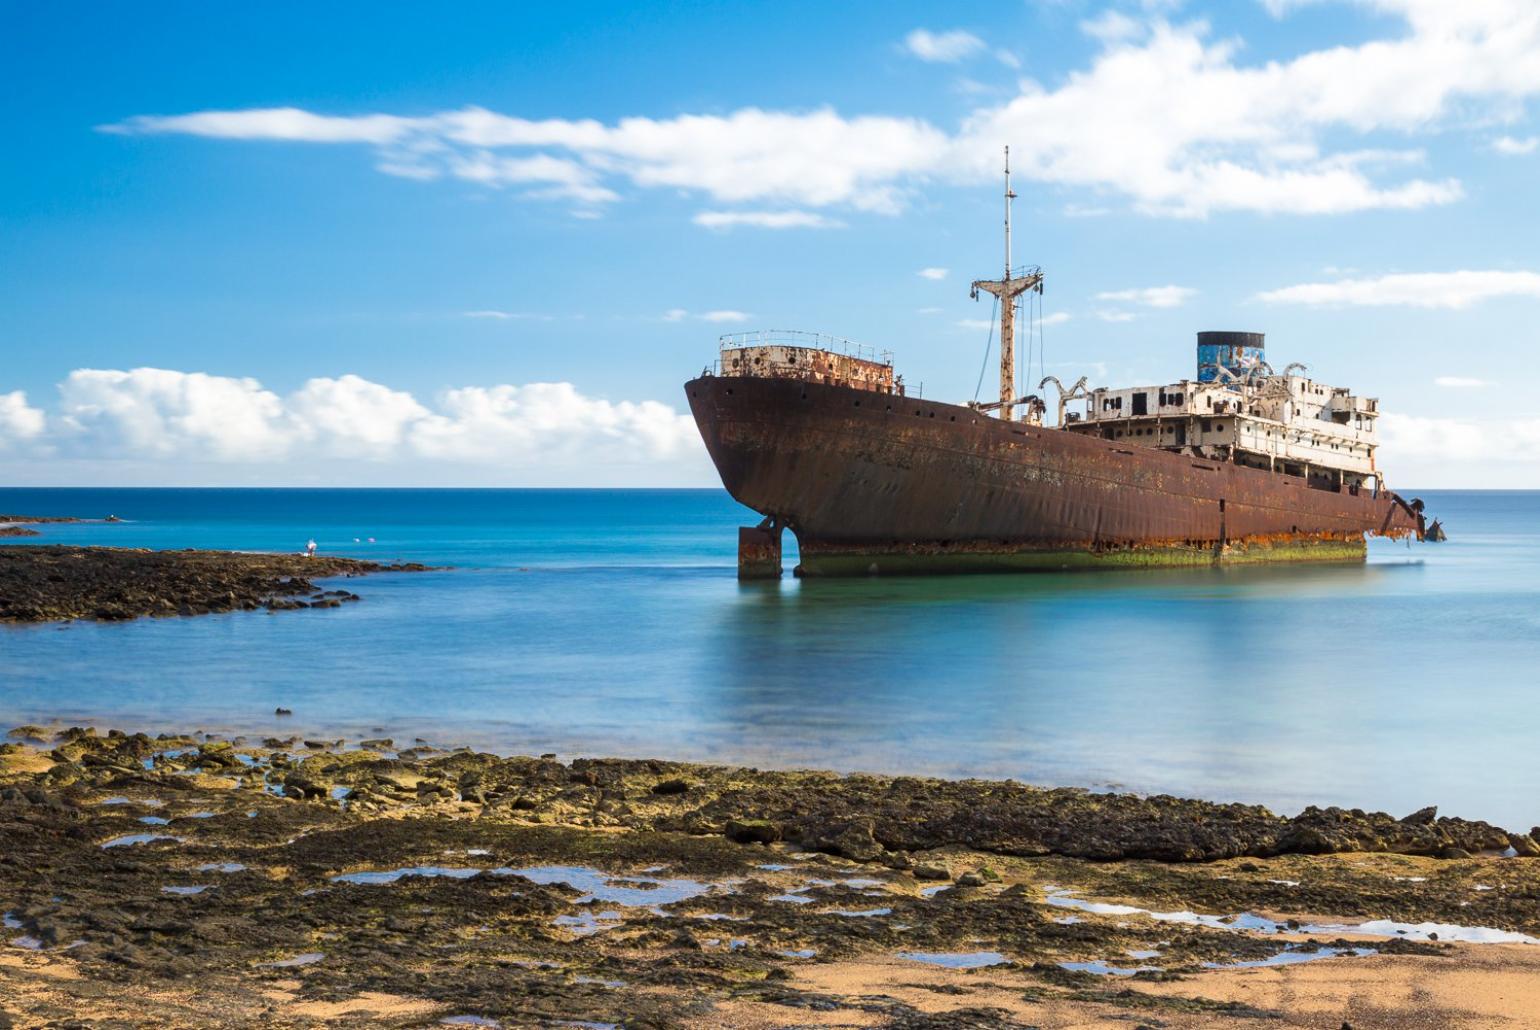 Telamon shipwreck